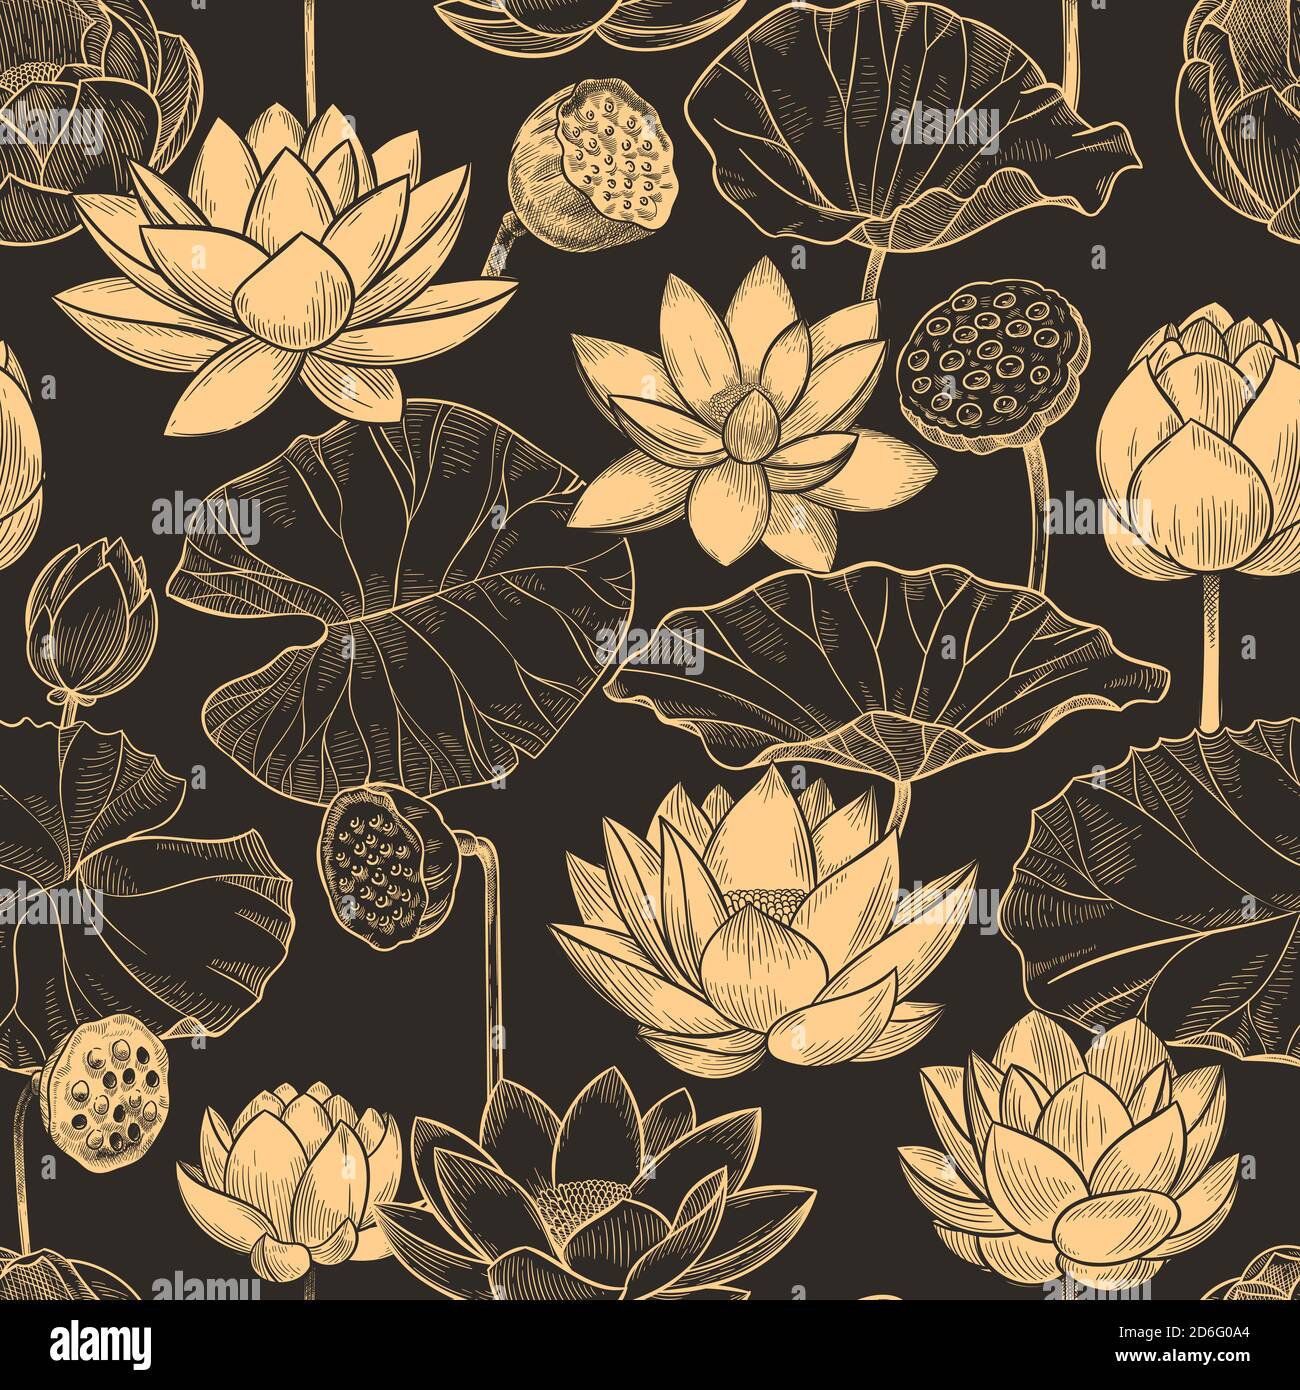 Skizze Lotus nahtloses Muster. Florale Zusammensetzung Seerose Blumen und Blätter, monochrome Lotusse für Produkte, Tapete Vektor Textur Stock Vektor